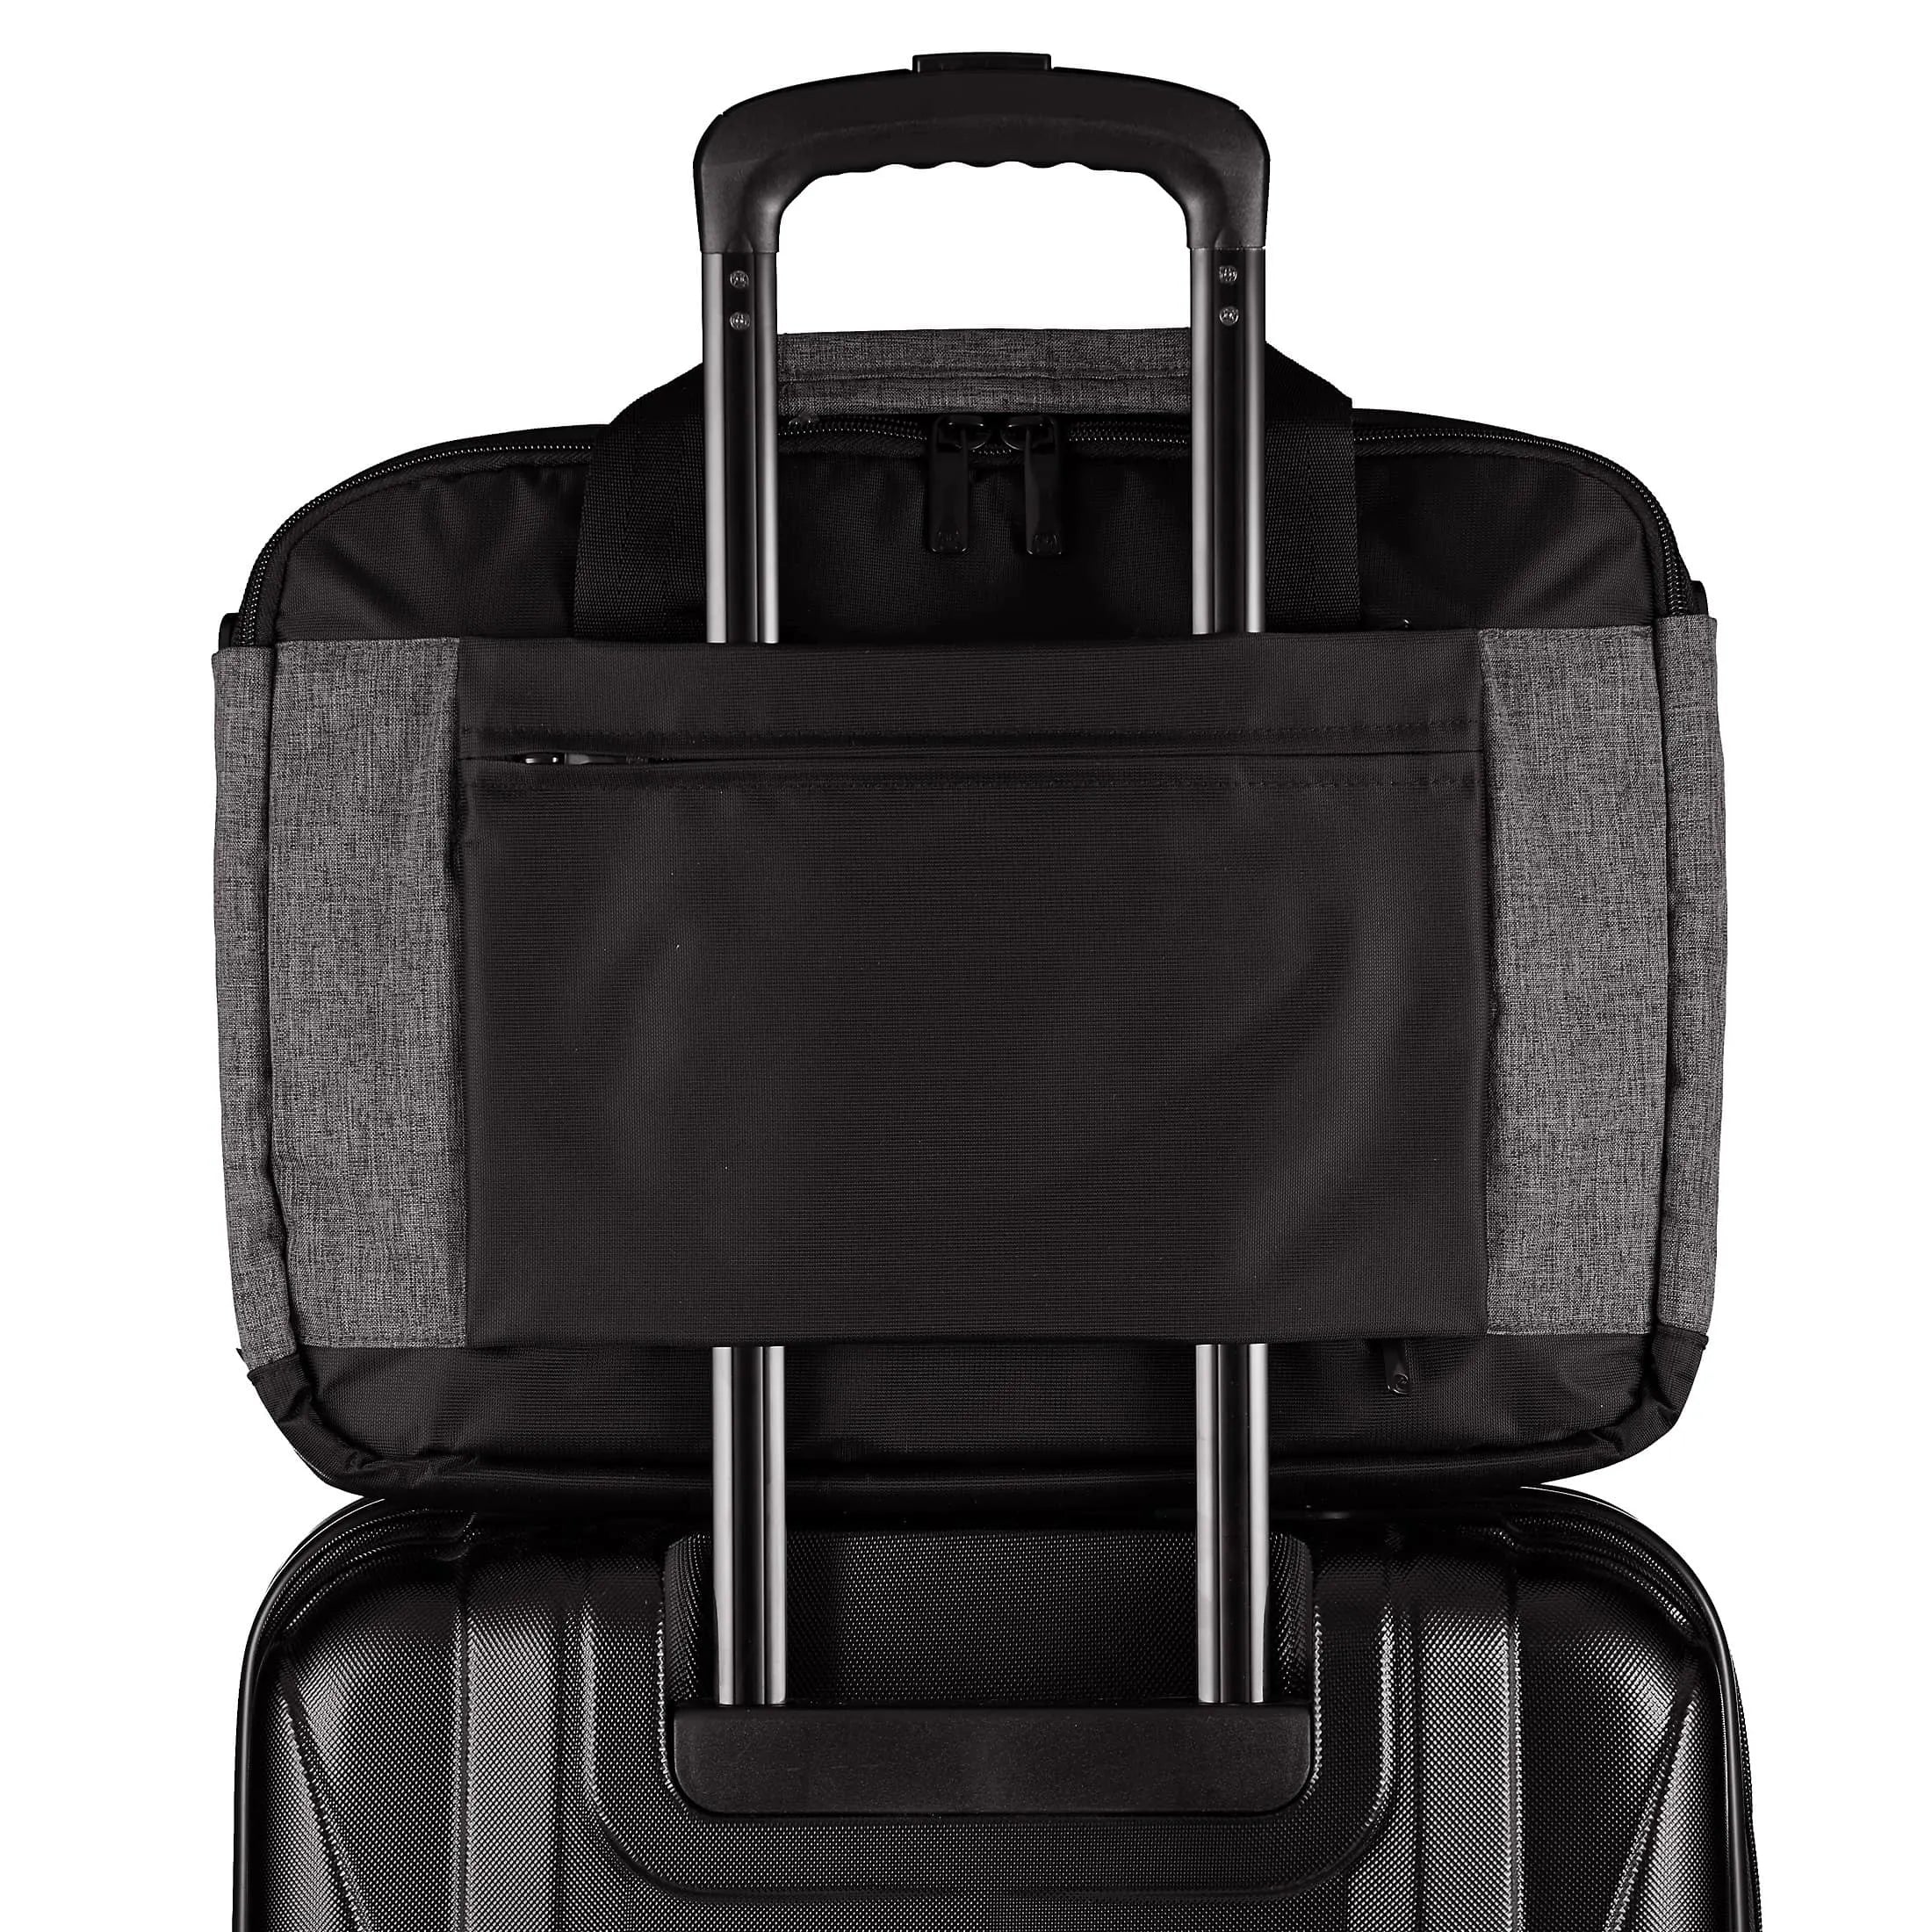 Wenger Business Underground briefcase 43 cm - black